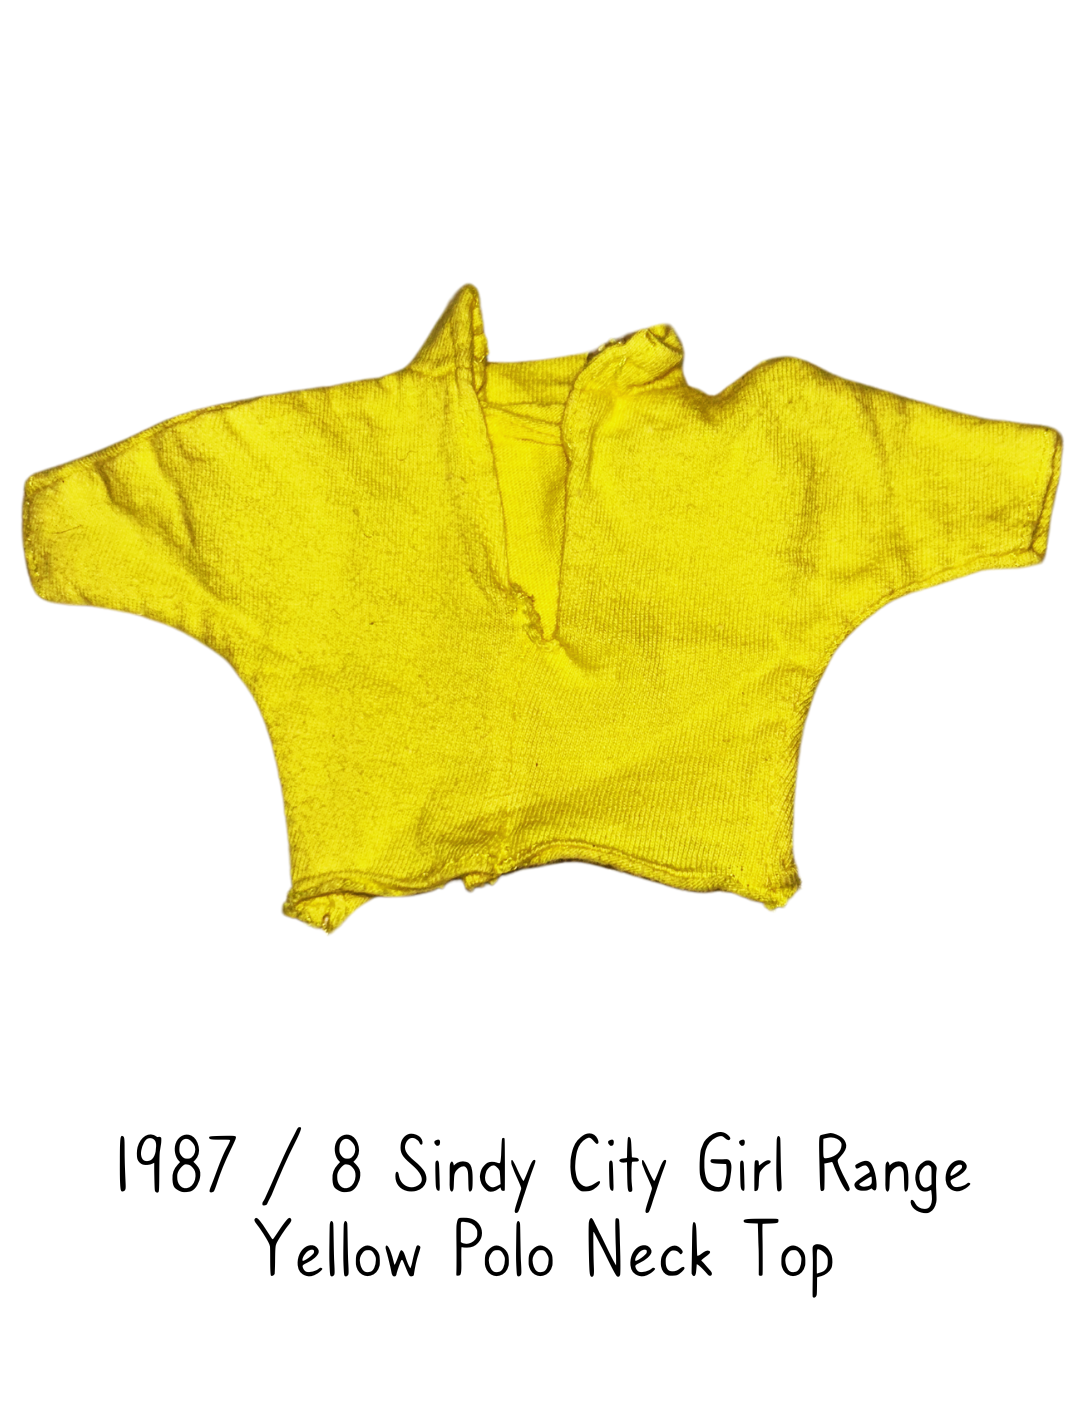 1988 Hasbro Sindy City Girl Yellow Polo Neck Top